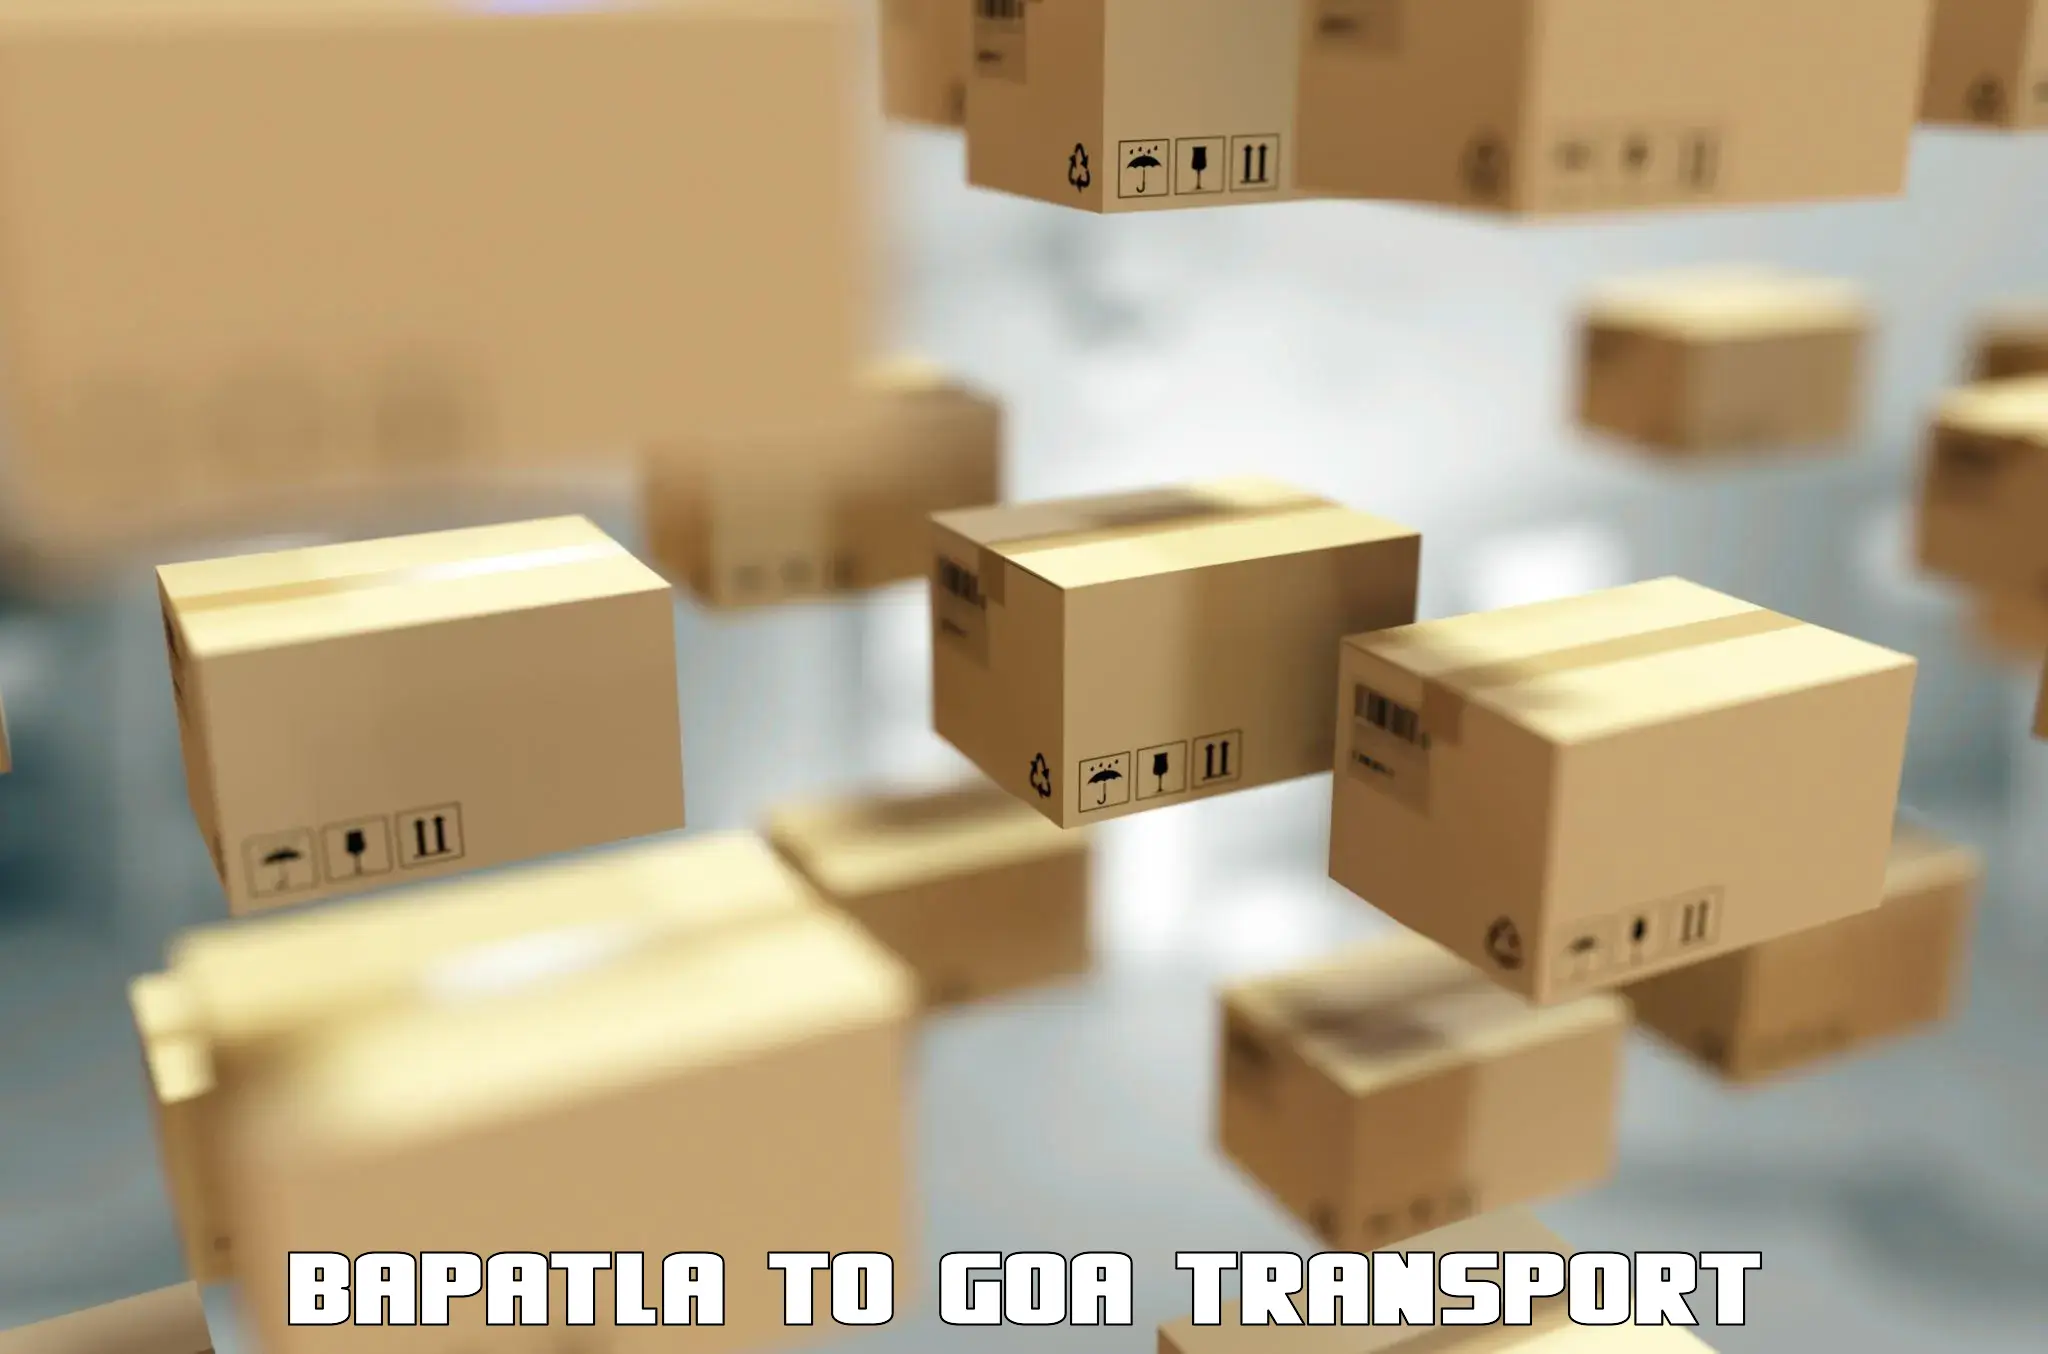 Nearest transport service Bapatla to Canacona